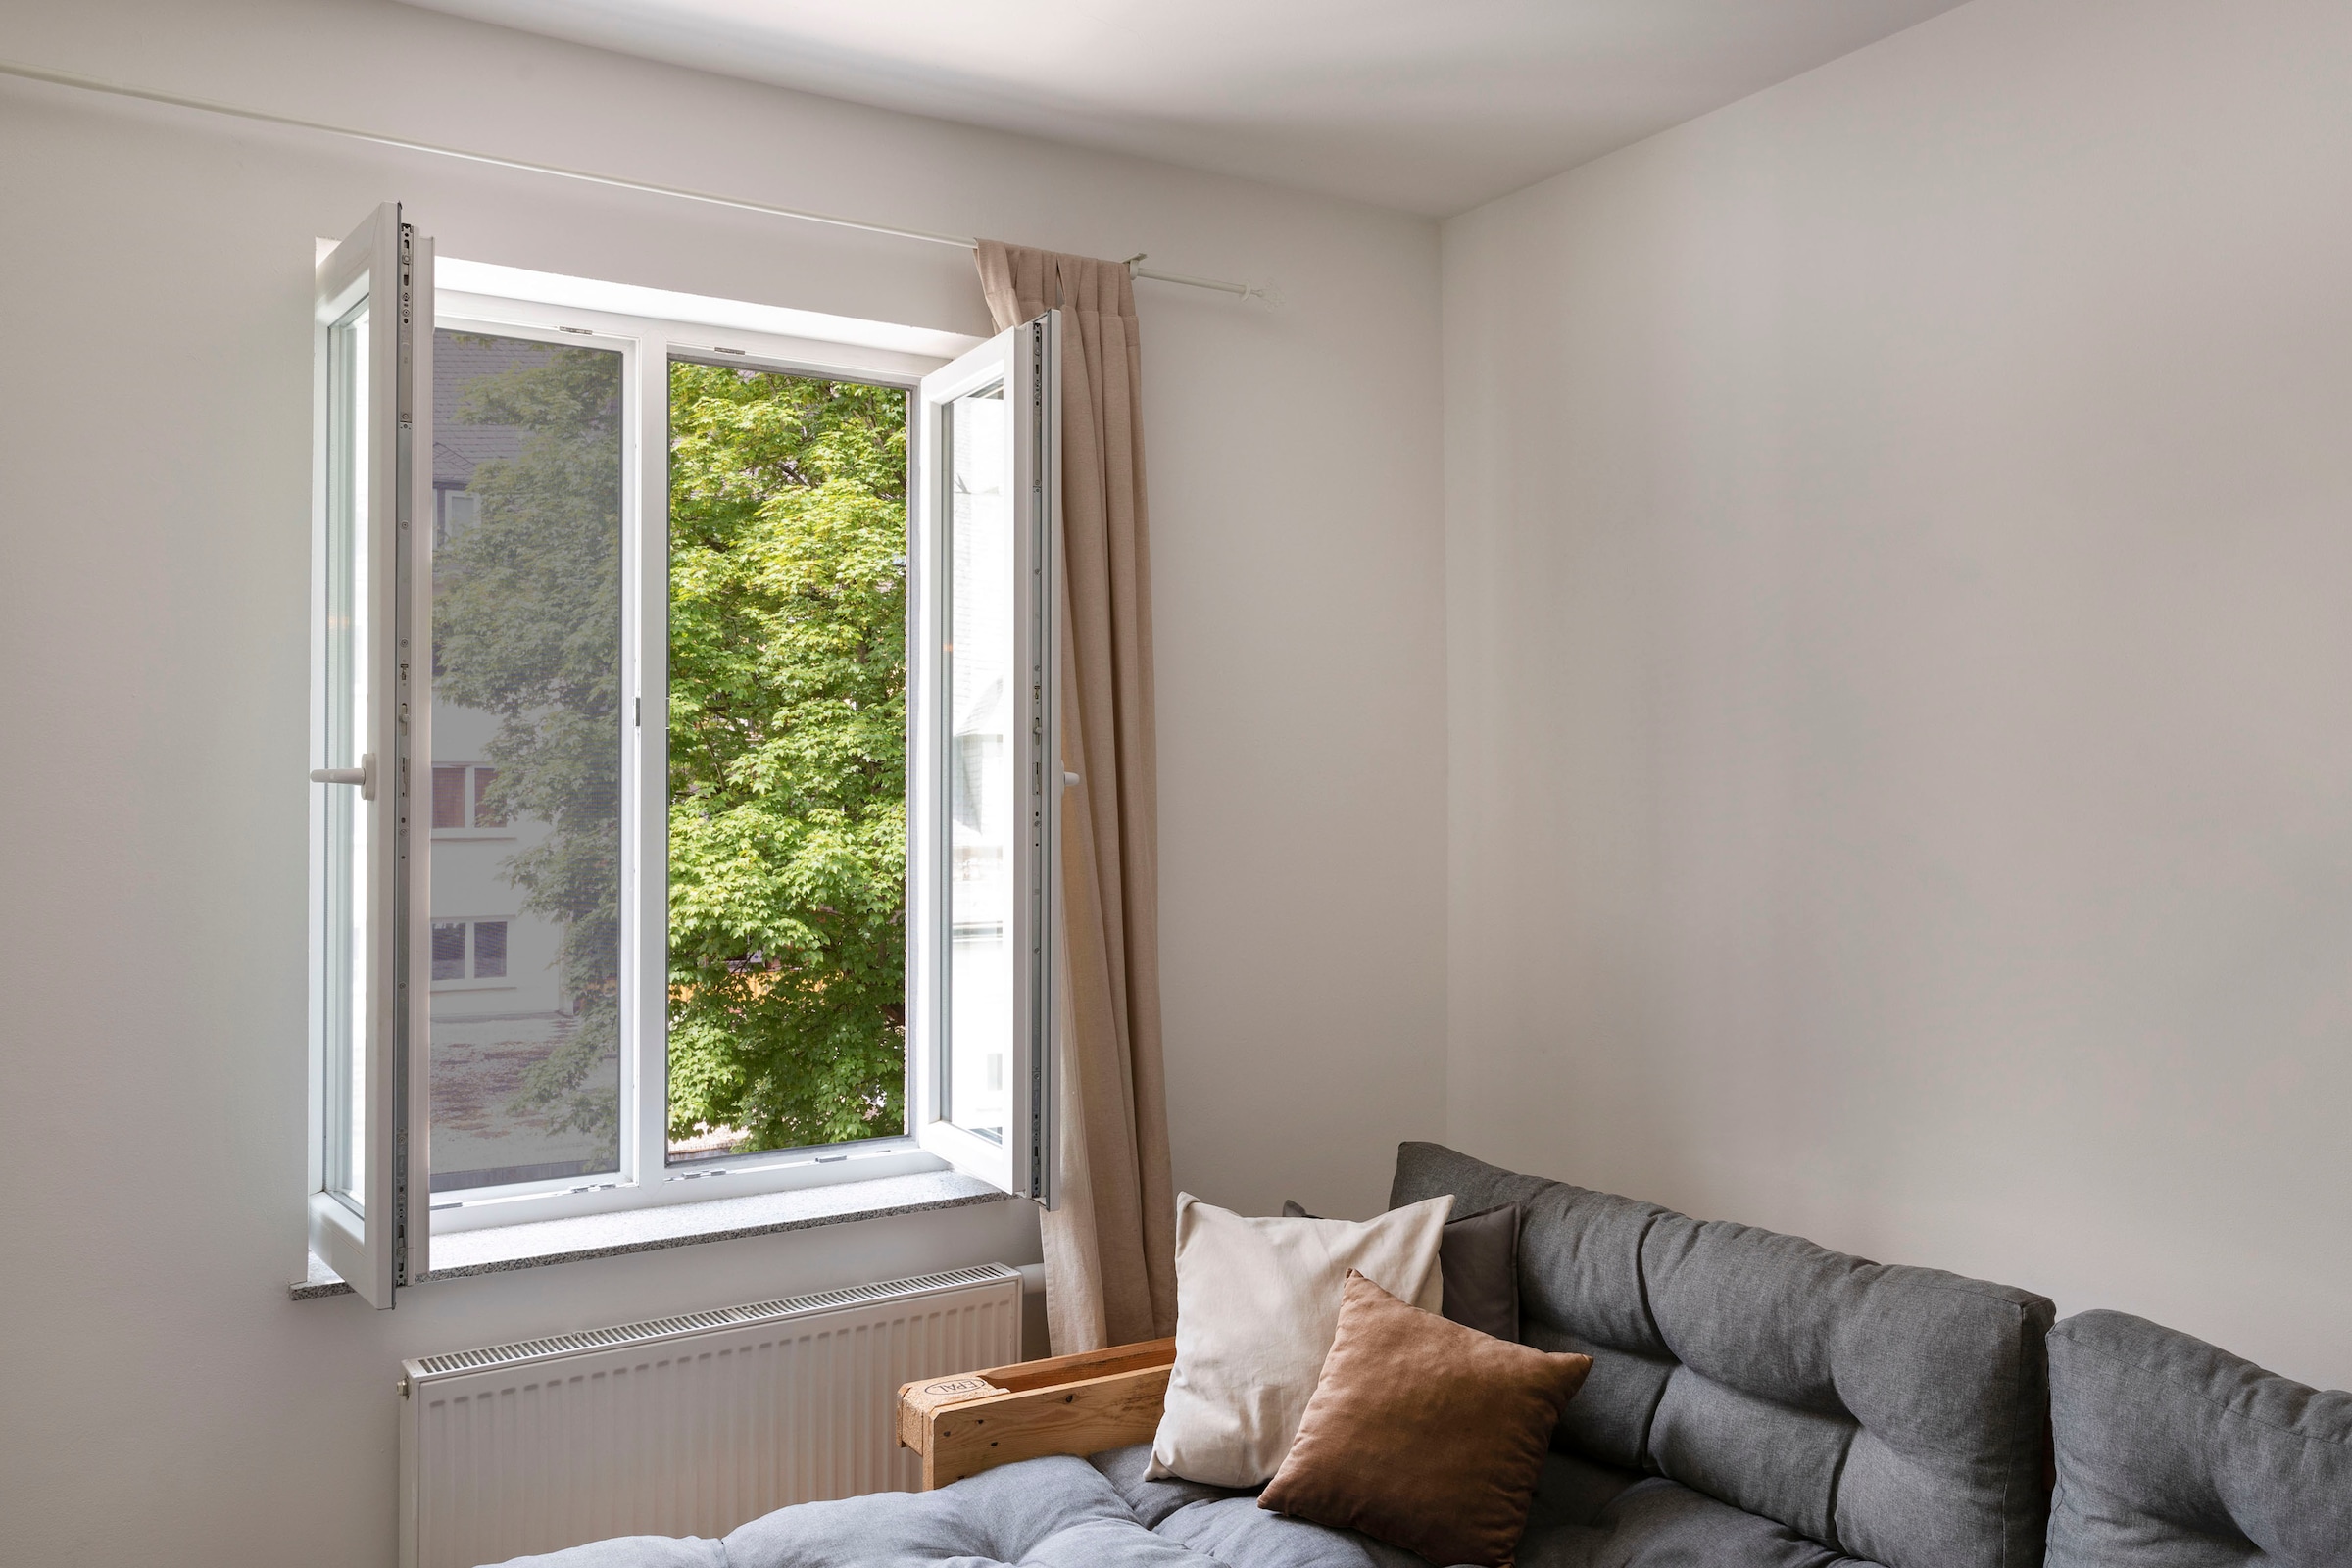 SCHELLENBERG Fliegengitter-Gewebe »50715«, mit Klettband, für Fenster, ohne bohren, 130x150 cm, anthrazit